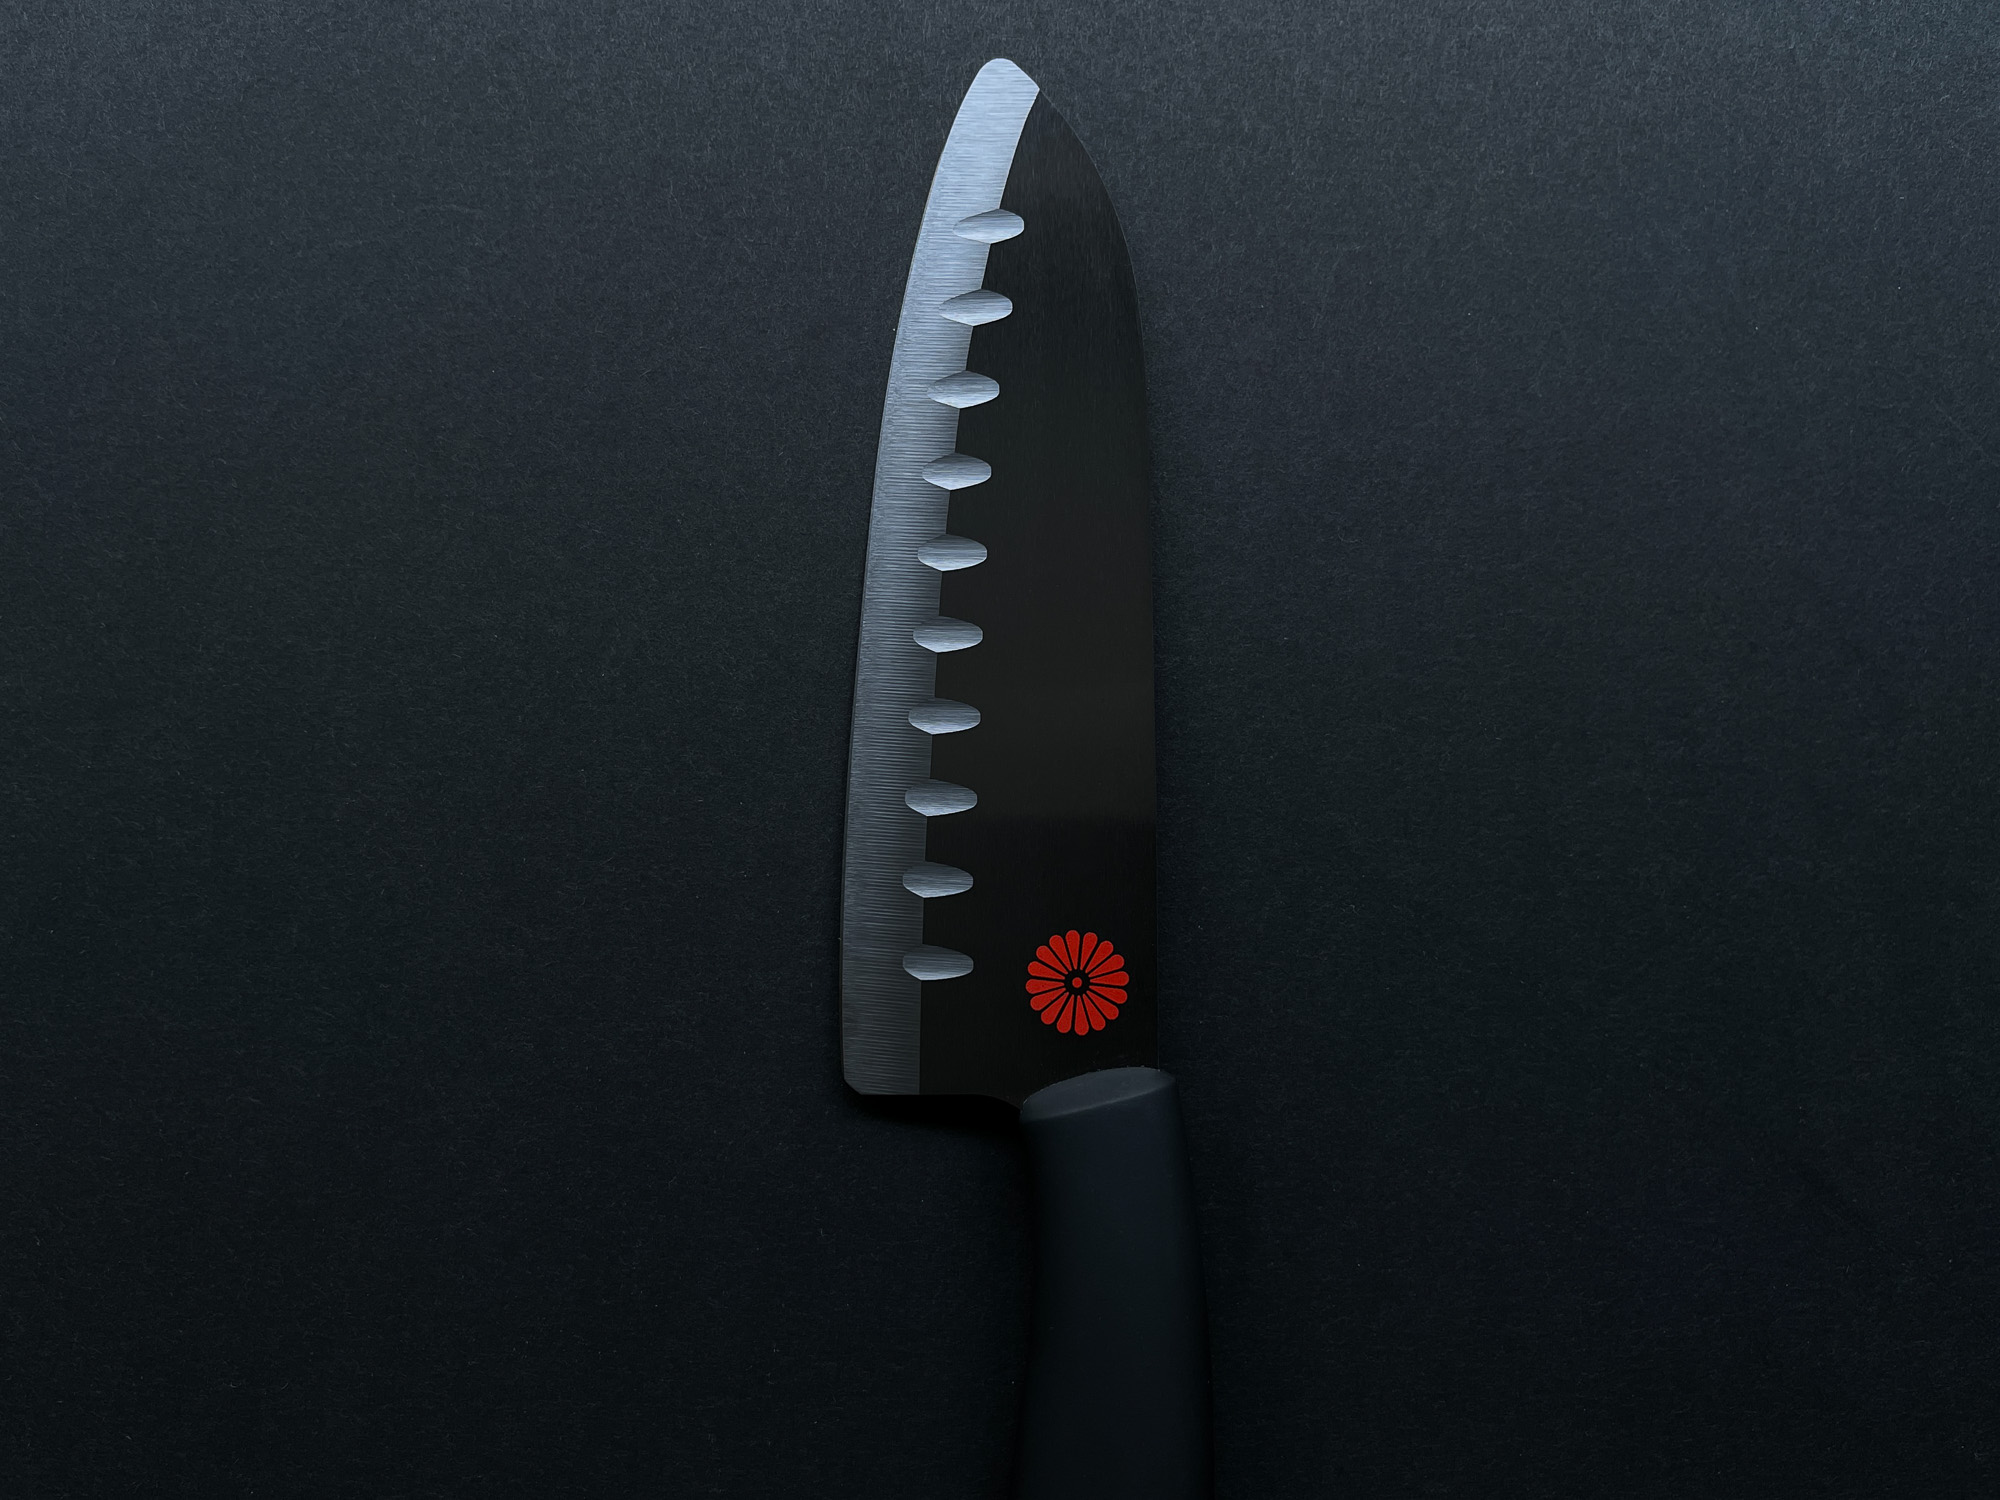 Kikusumi Black Ceramic Collection 3 Piece Chef Knife Gift Set Bundle – BENI  Red Handle - Kikusumi Knife SHOP